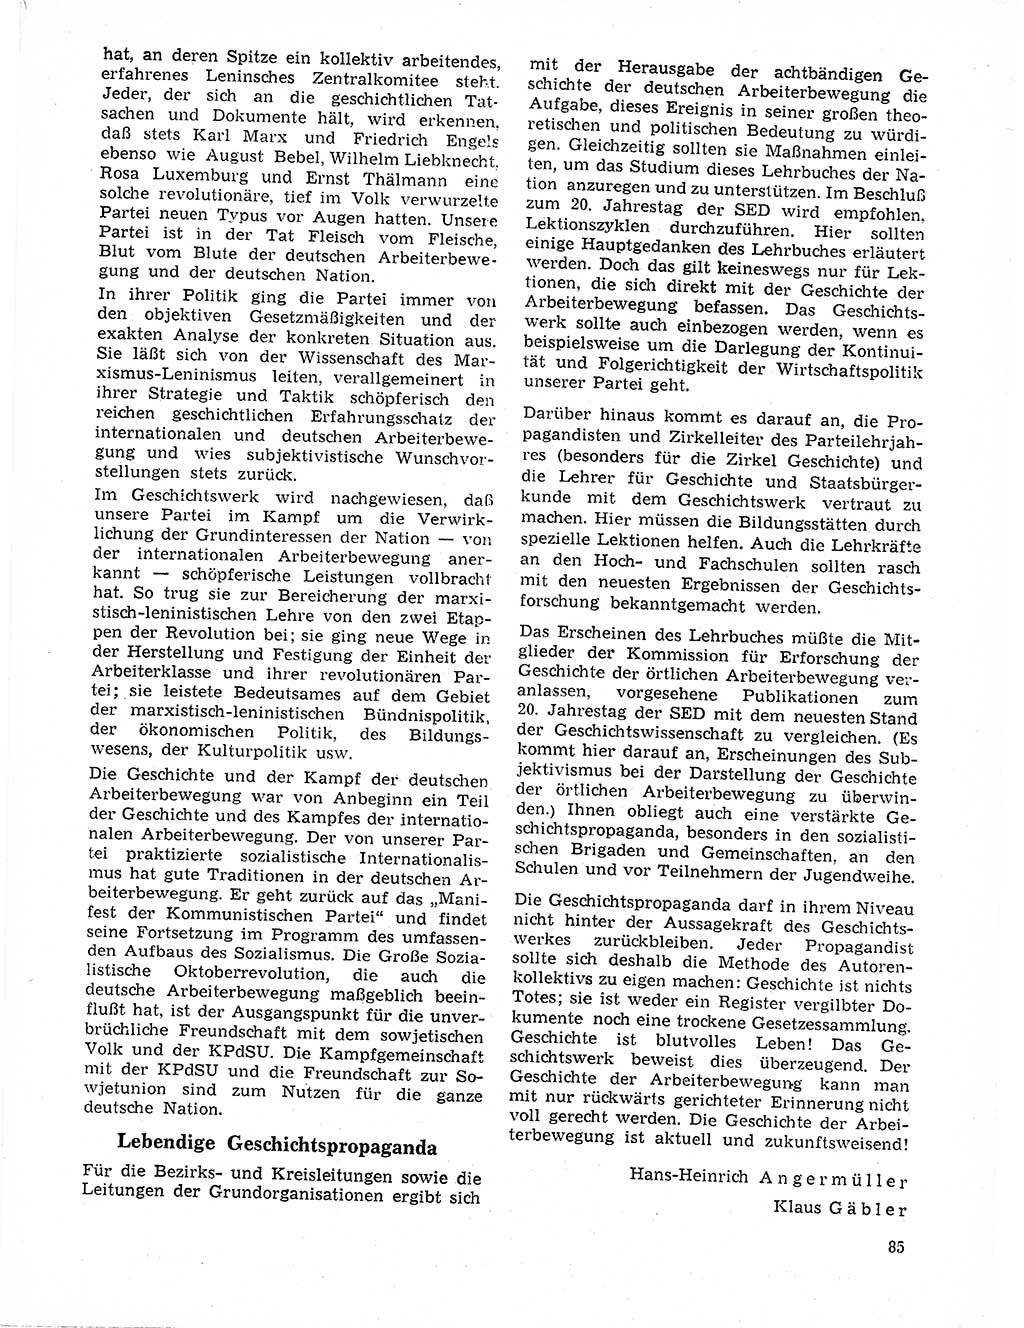 Neuer Weg (NW), Organ des Zentralkomitees (ZK) der SED (Sozialistische Einheitspartei Deutschlands) für Fragen des Parteilebens, 21. Jahrgang [Deutsche Demokratische Republik (DDR)] 1966, Seite 85 (NW ZK SED DDR 1966, S. 85)